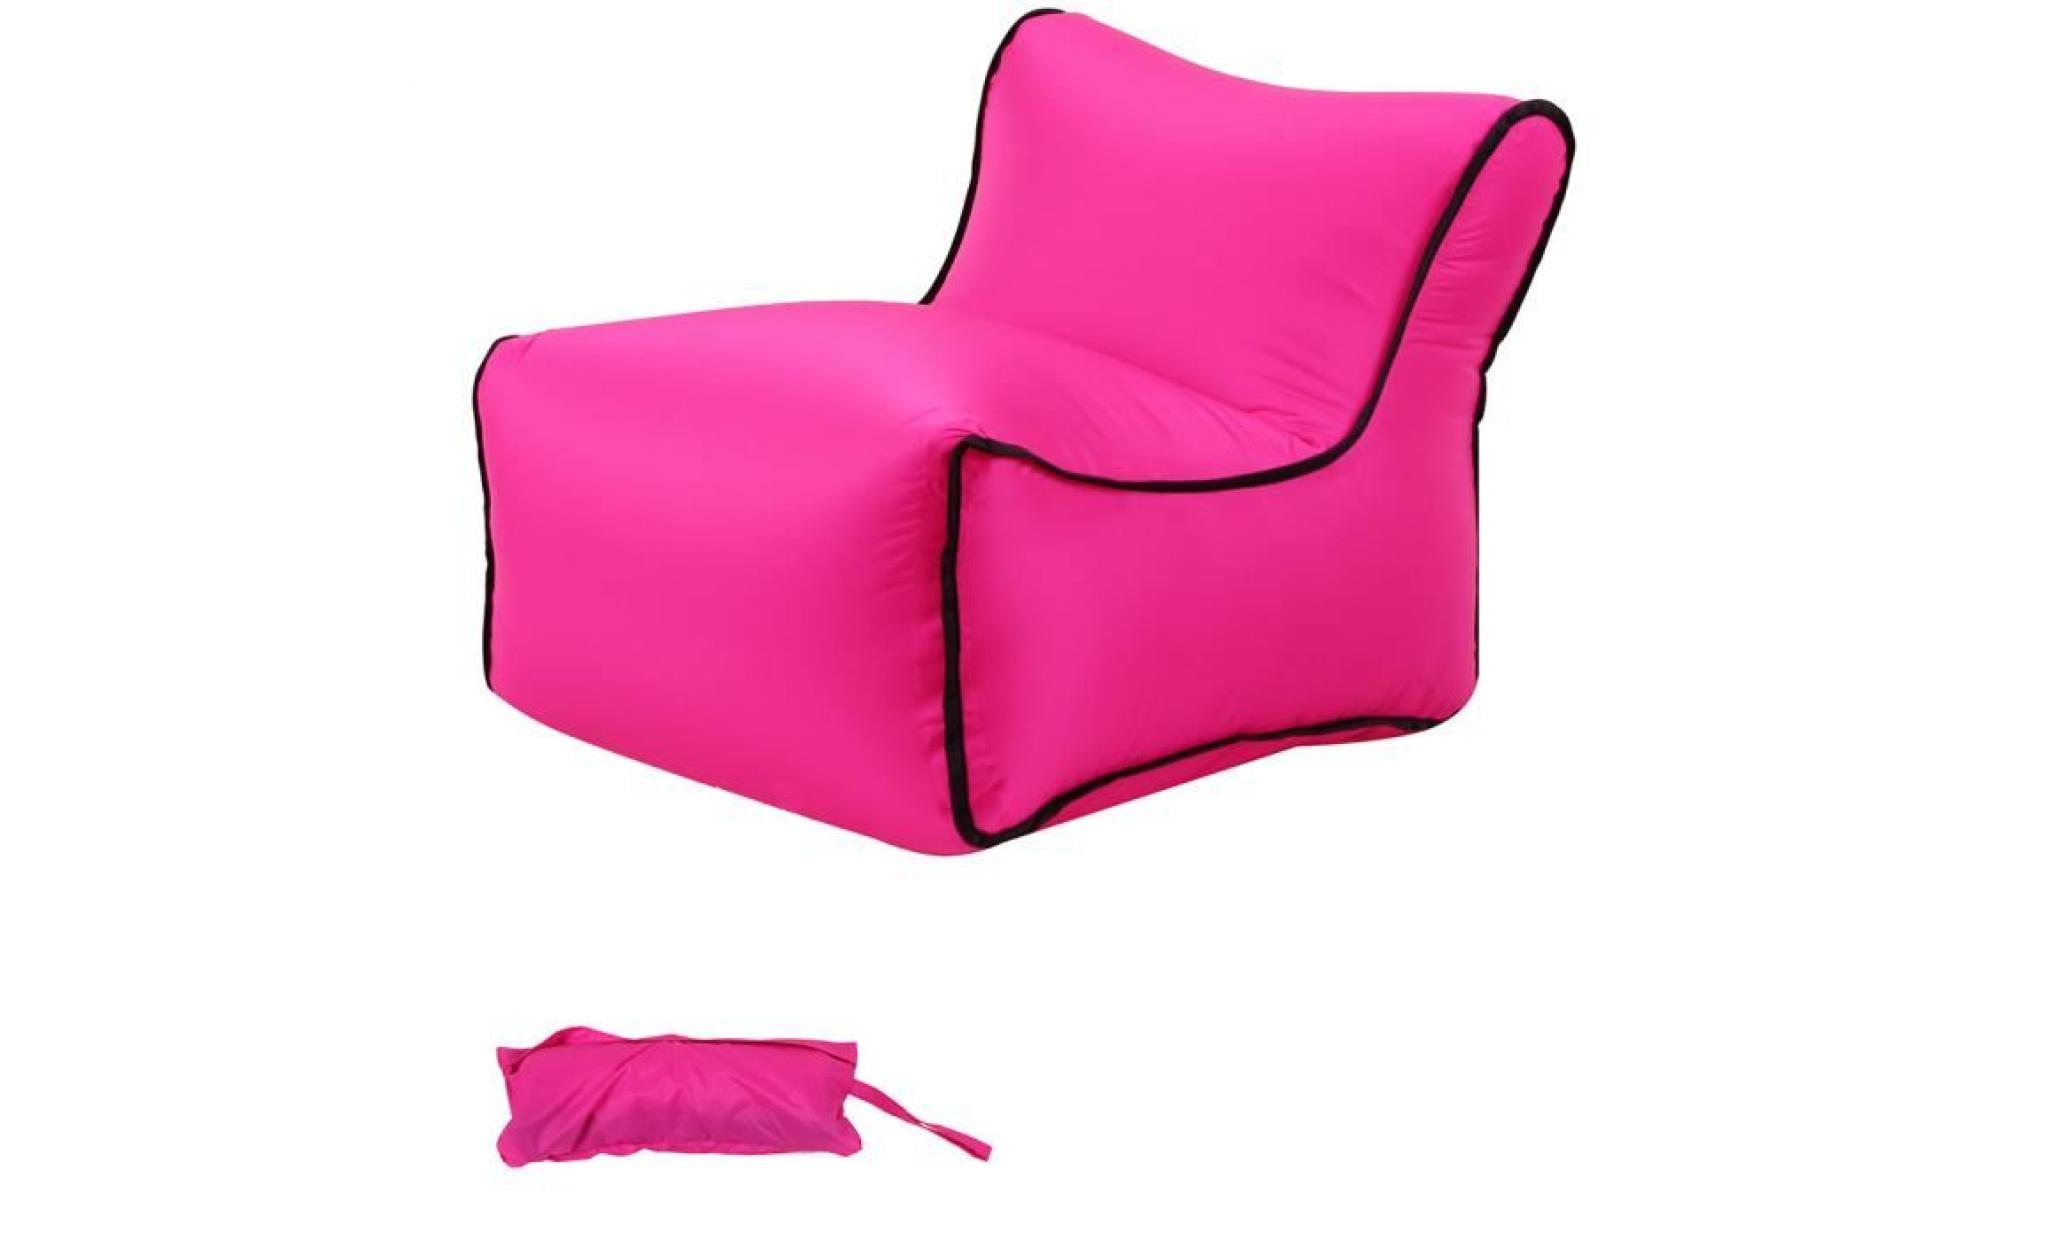 35x50x35cm 1pc chaise de jardin pliante plastique, chaise gonflable, chaise pliante camping, air canapé gonflable pliable bleu fonce